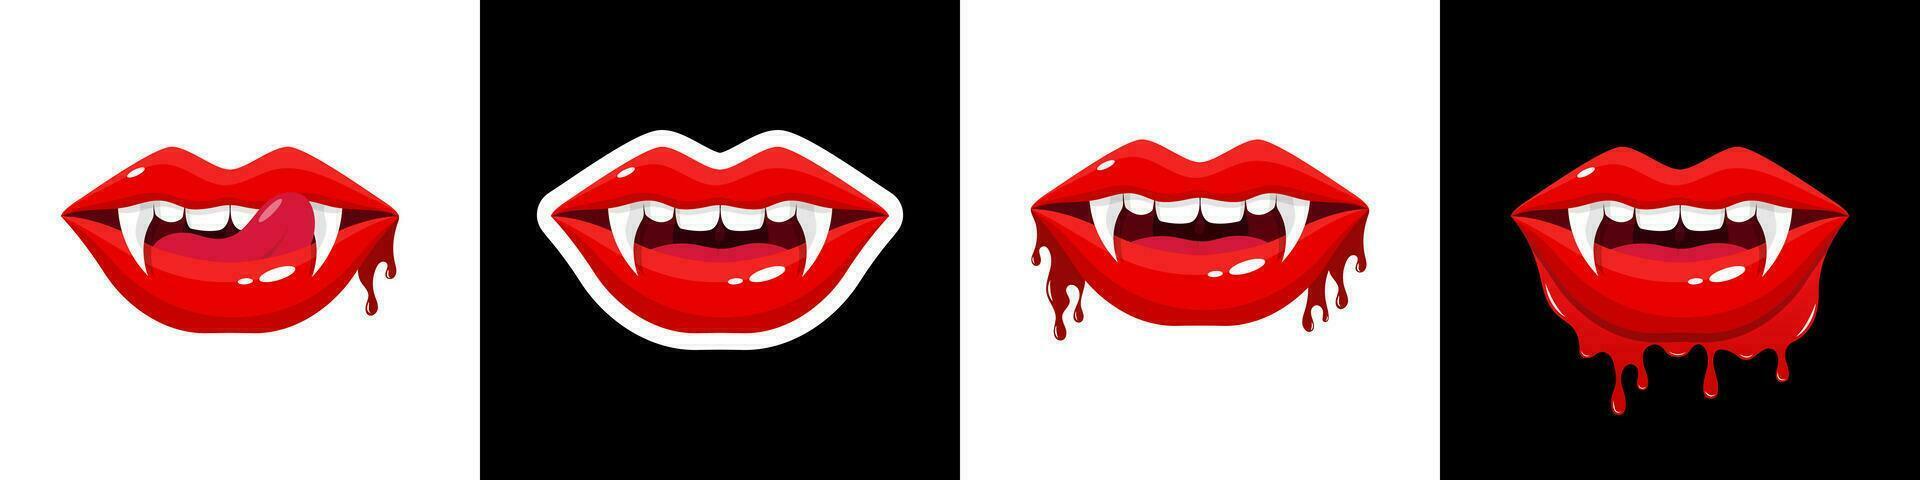 conjunto boca con un lengua lame dientes vampiro boca abierto hembra rojo labios con largo puntiagudo canino dientes y sangre ilustración vector sangriento vampiro labios